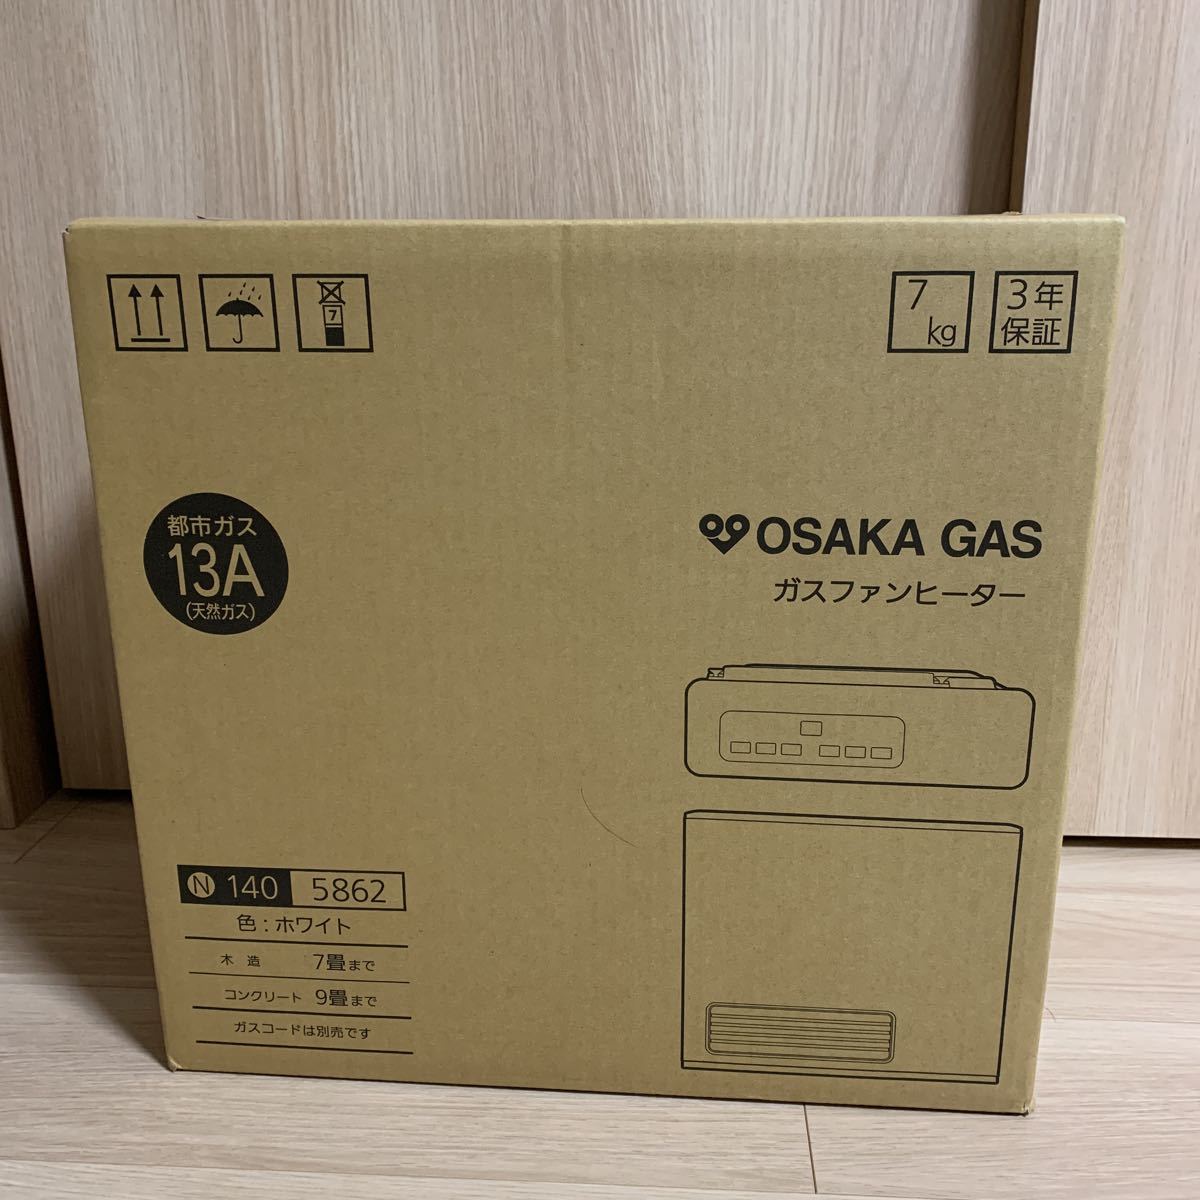 大阪ガス 140-5862 [都市ガス ホワイト] オークション比較 - 価格.com